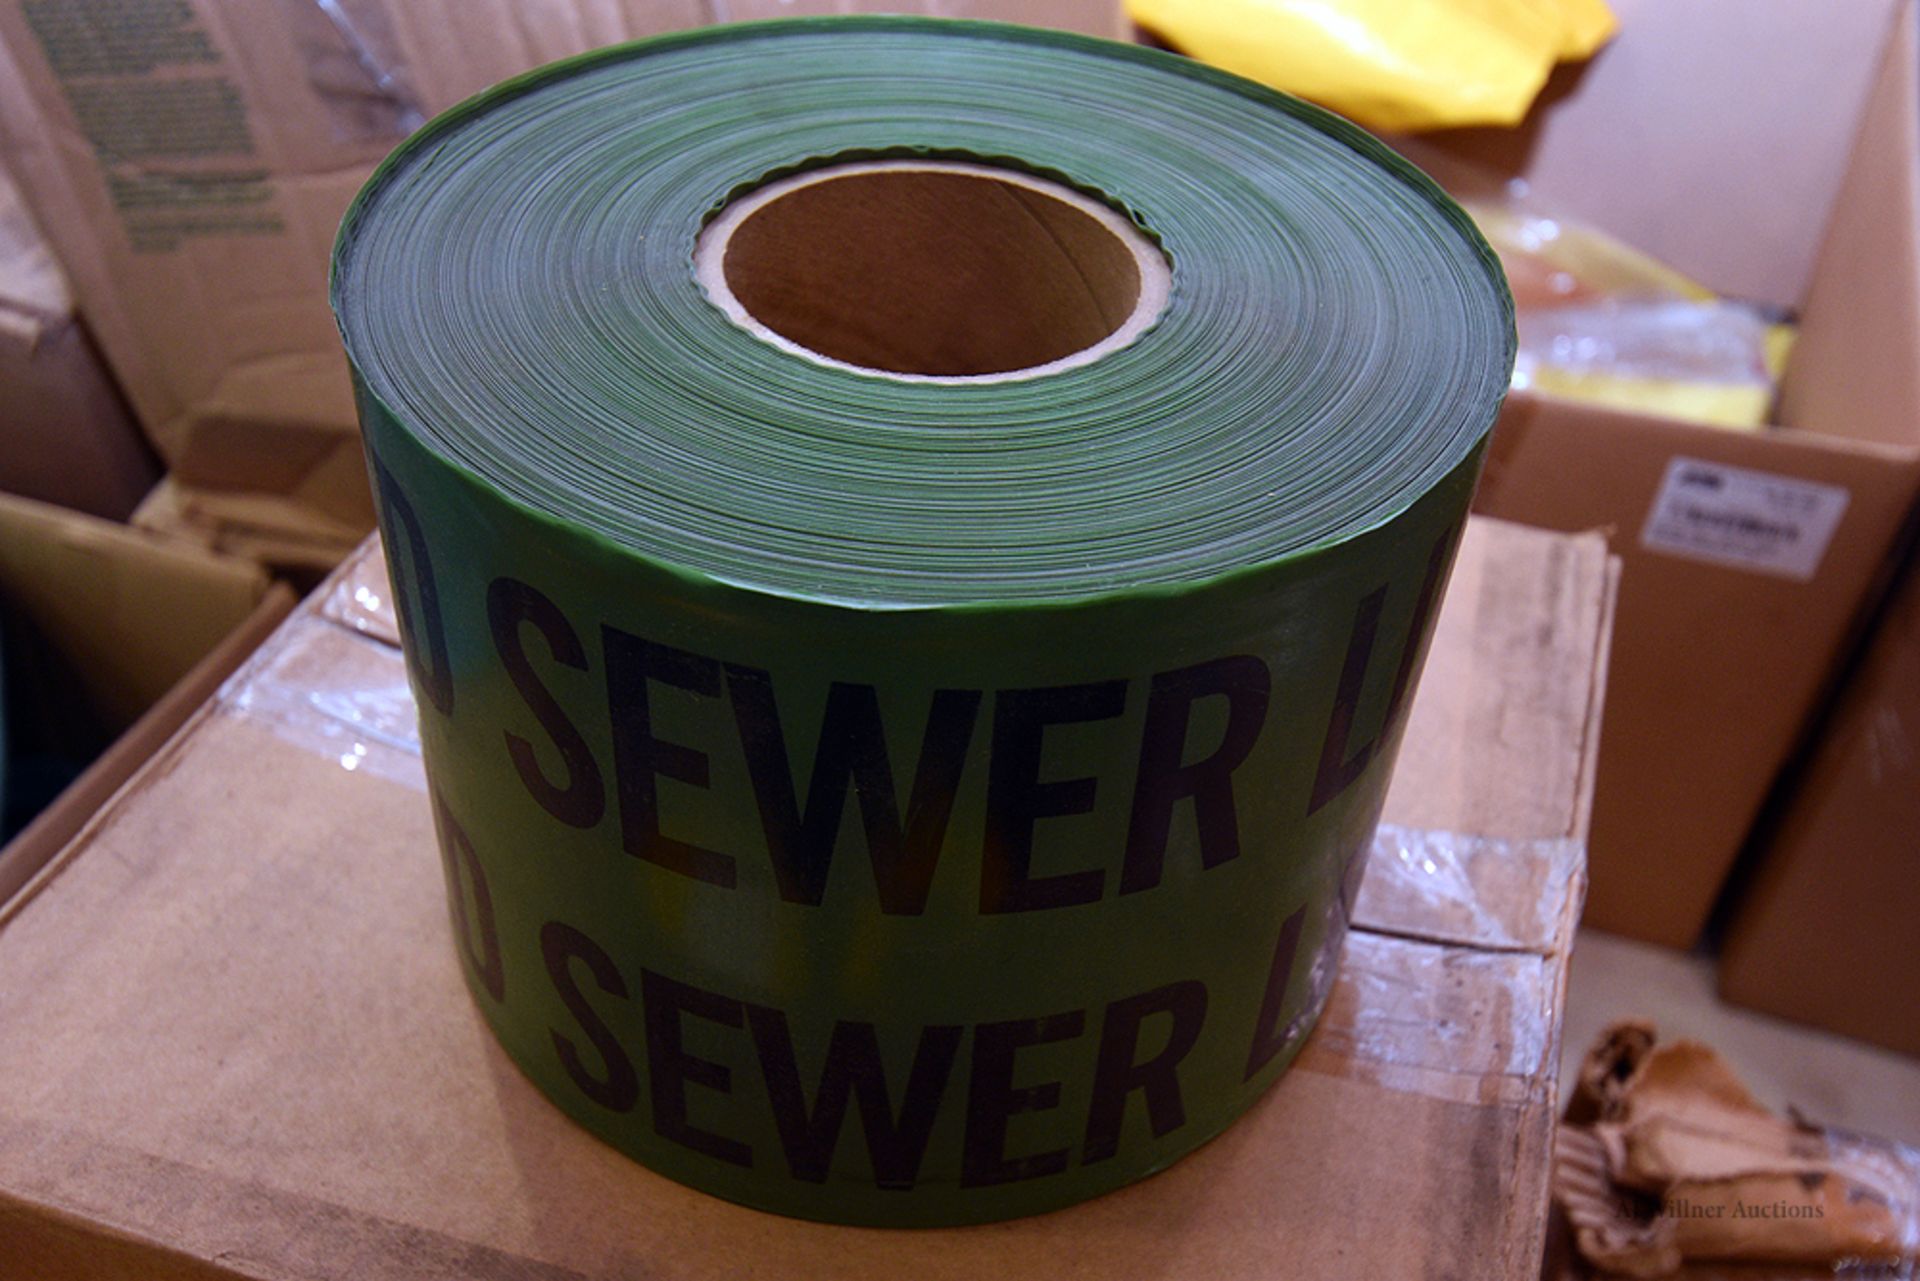 Green Saftey Tape "Caution Buried Sewer Line Below" - Bild 2 aus 2